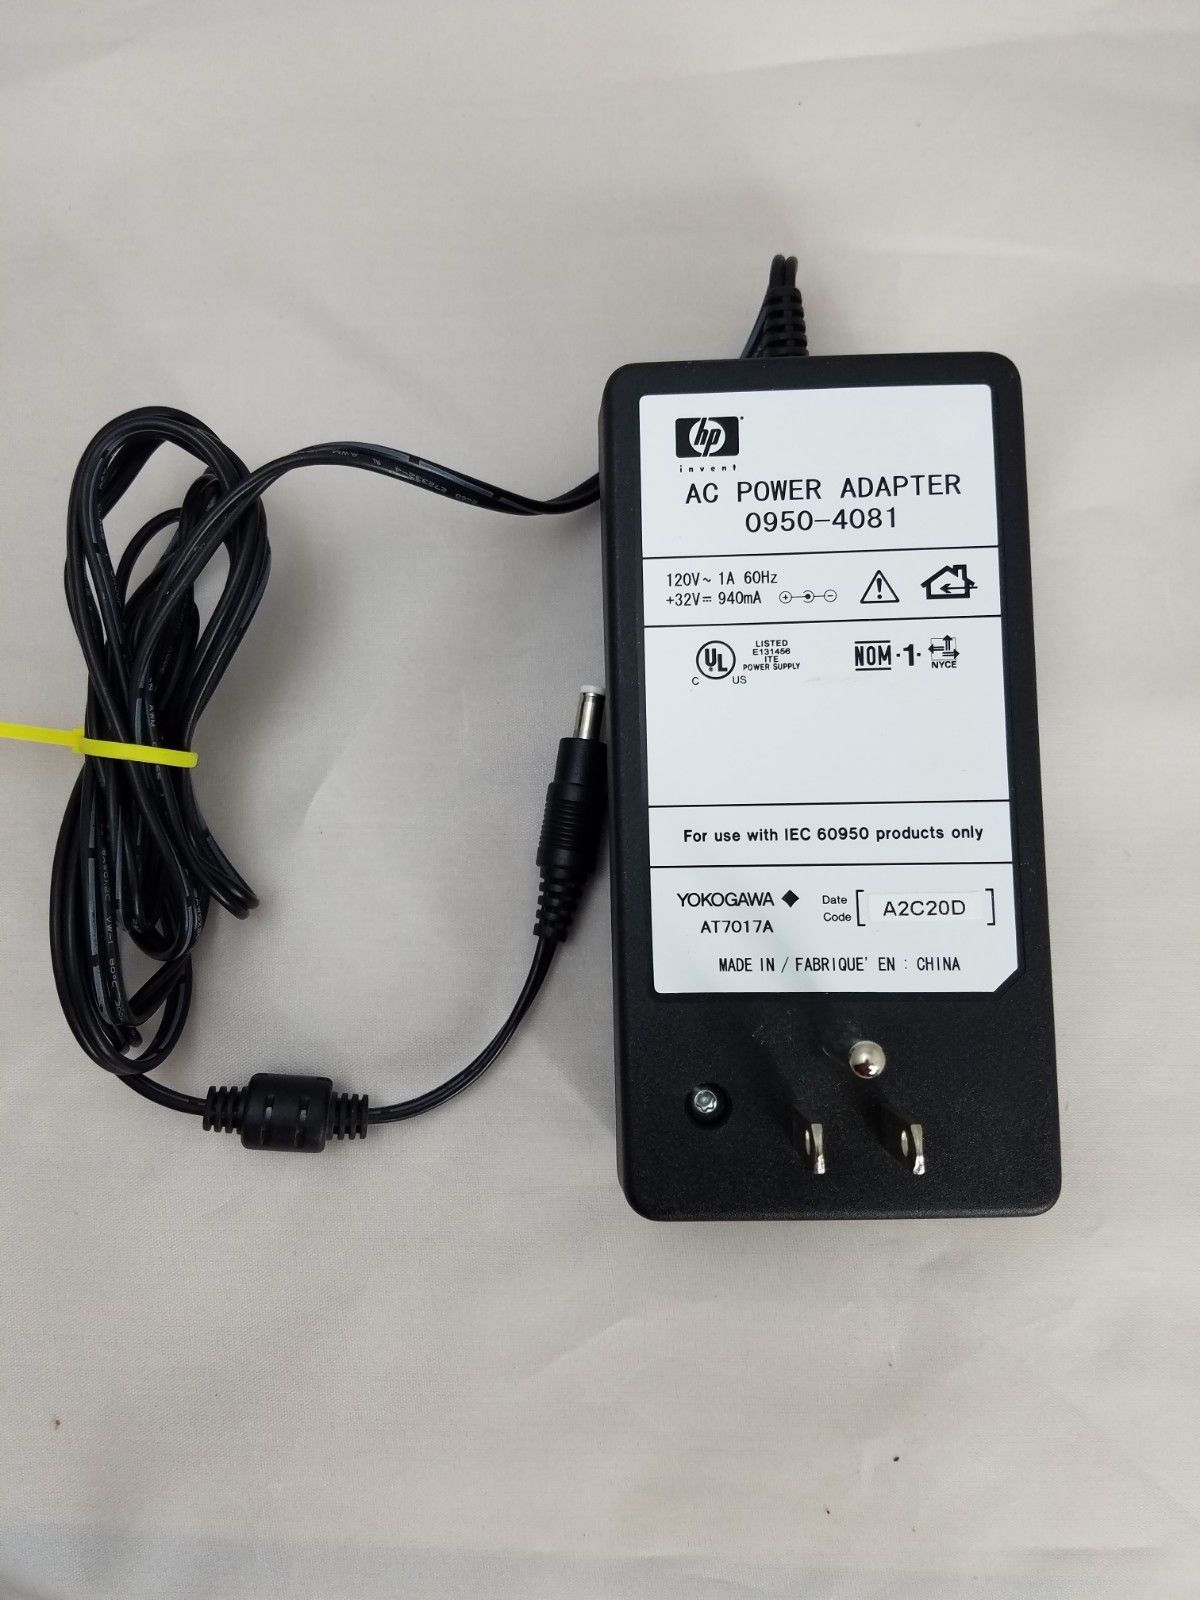 New Original HP 0950-4081 32V 940mA AC Power Adapter for PhotoSmart 5550 7150 7155 Product Descrip